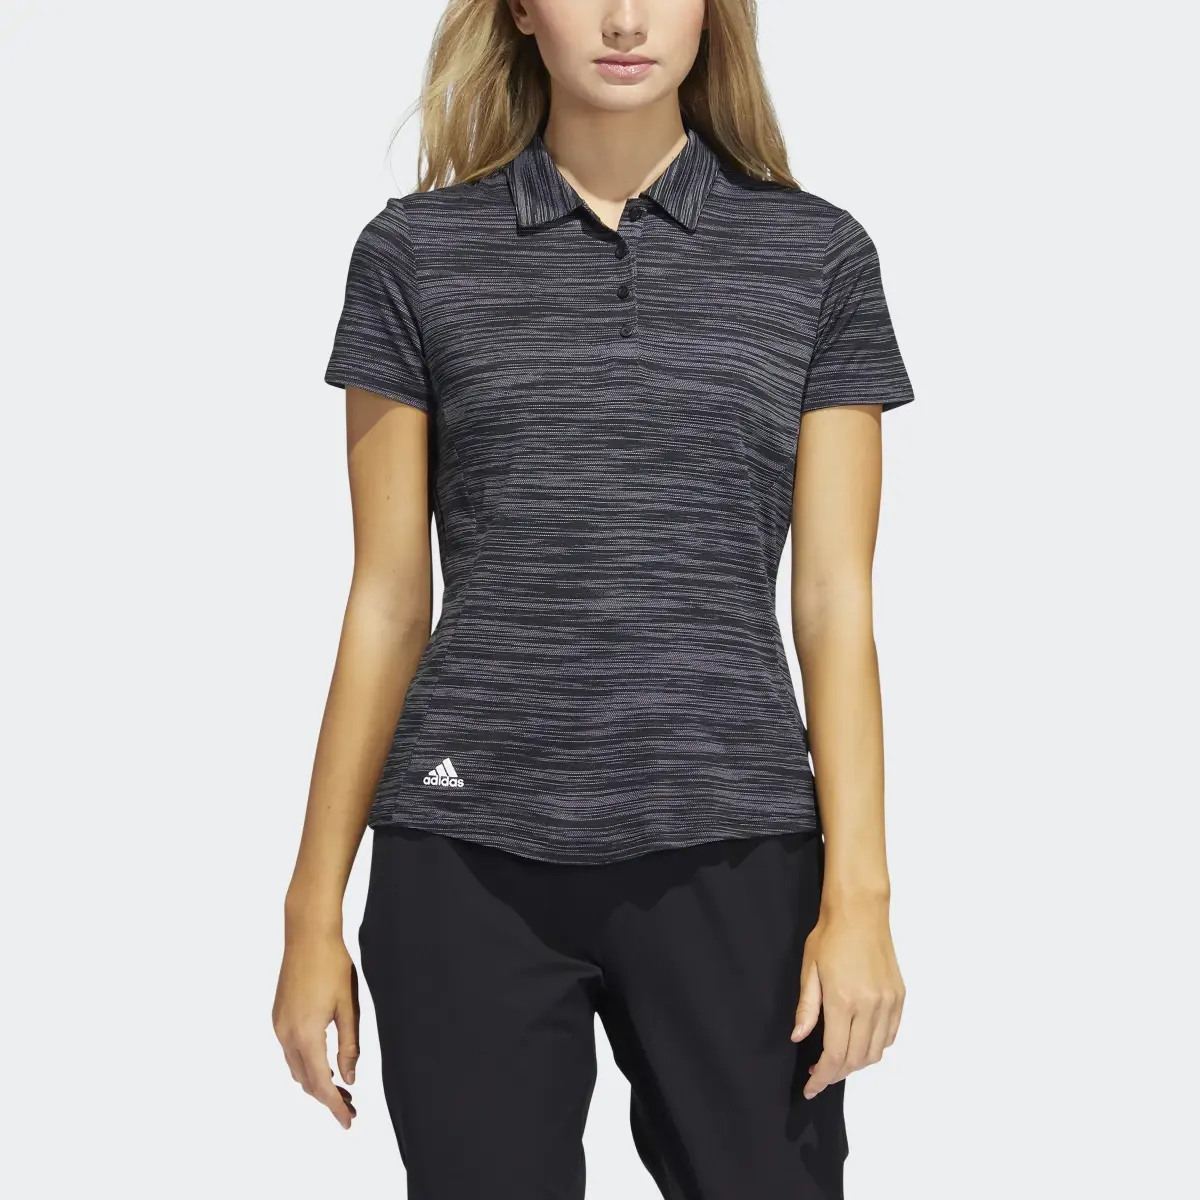 Adidas Space-Dyed Kısa Kollu Polo Tişört. 1